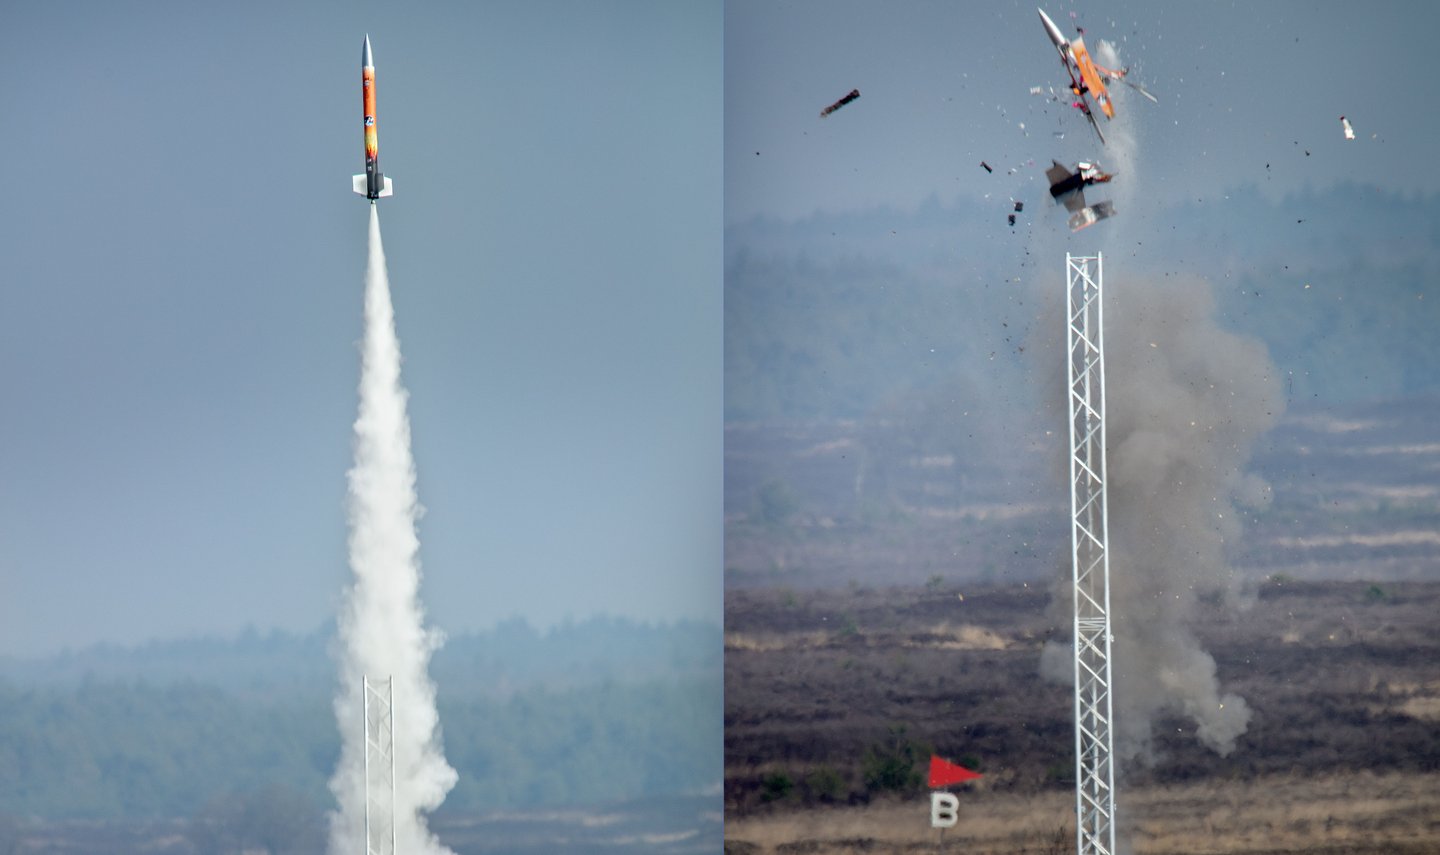 CanSat lanceerevenement - Foto's DigiDaan.jpg